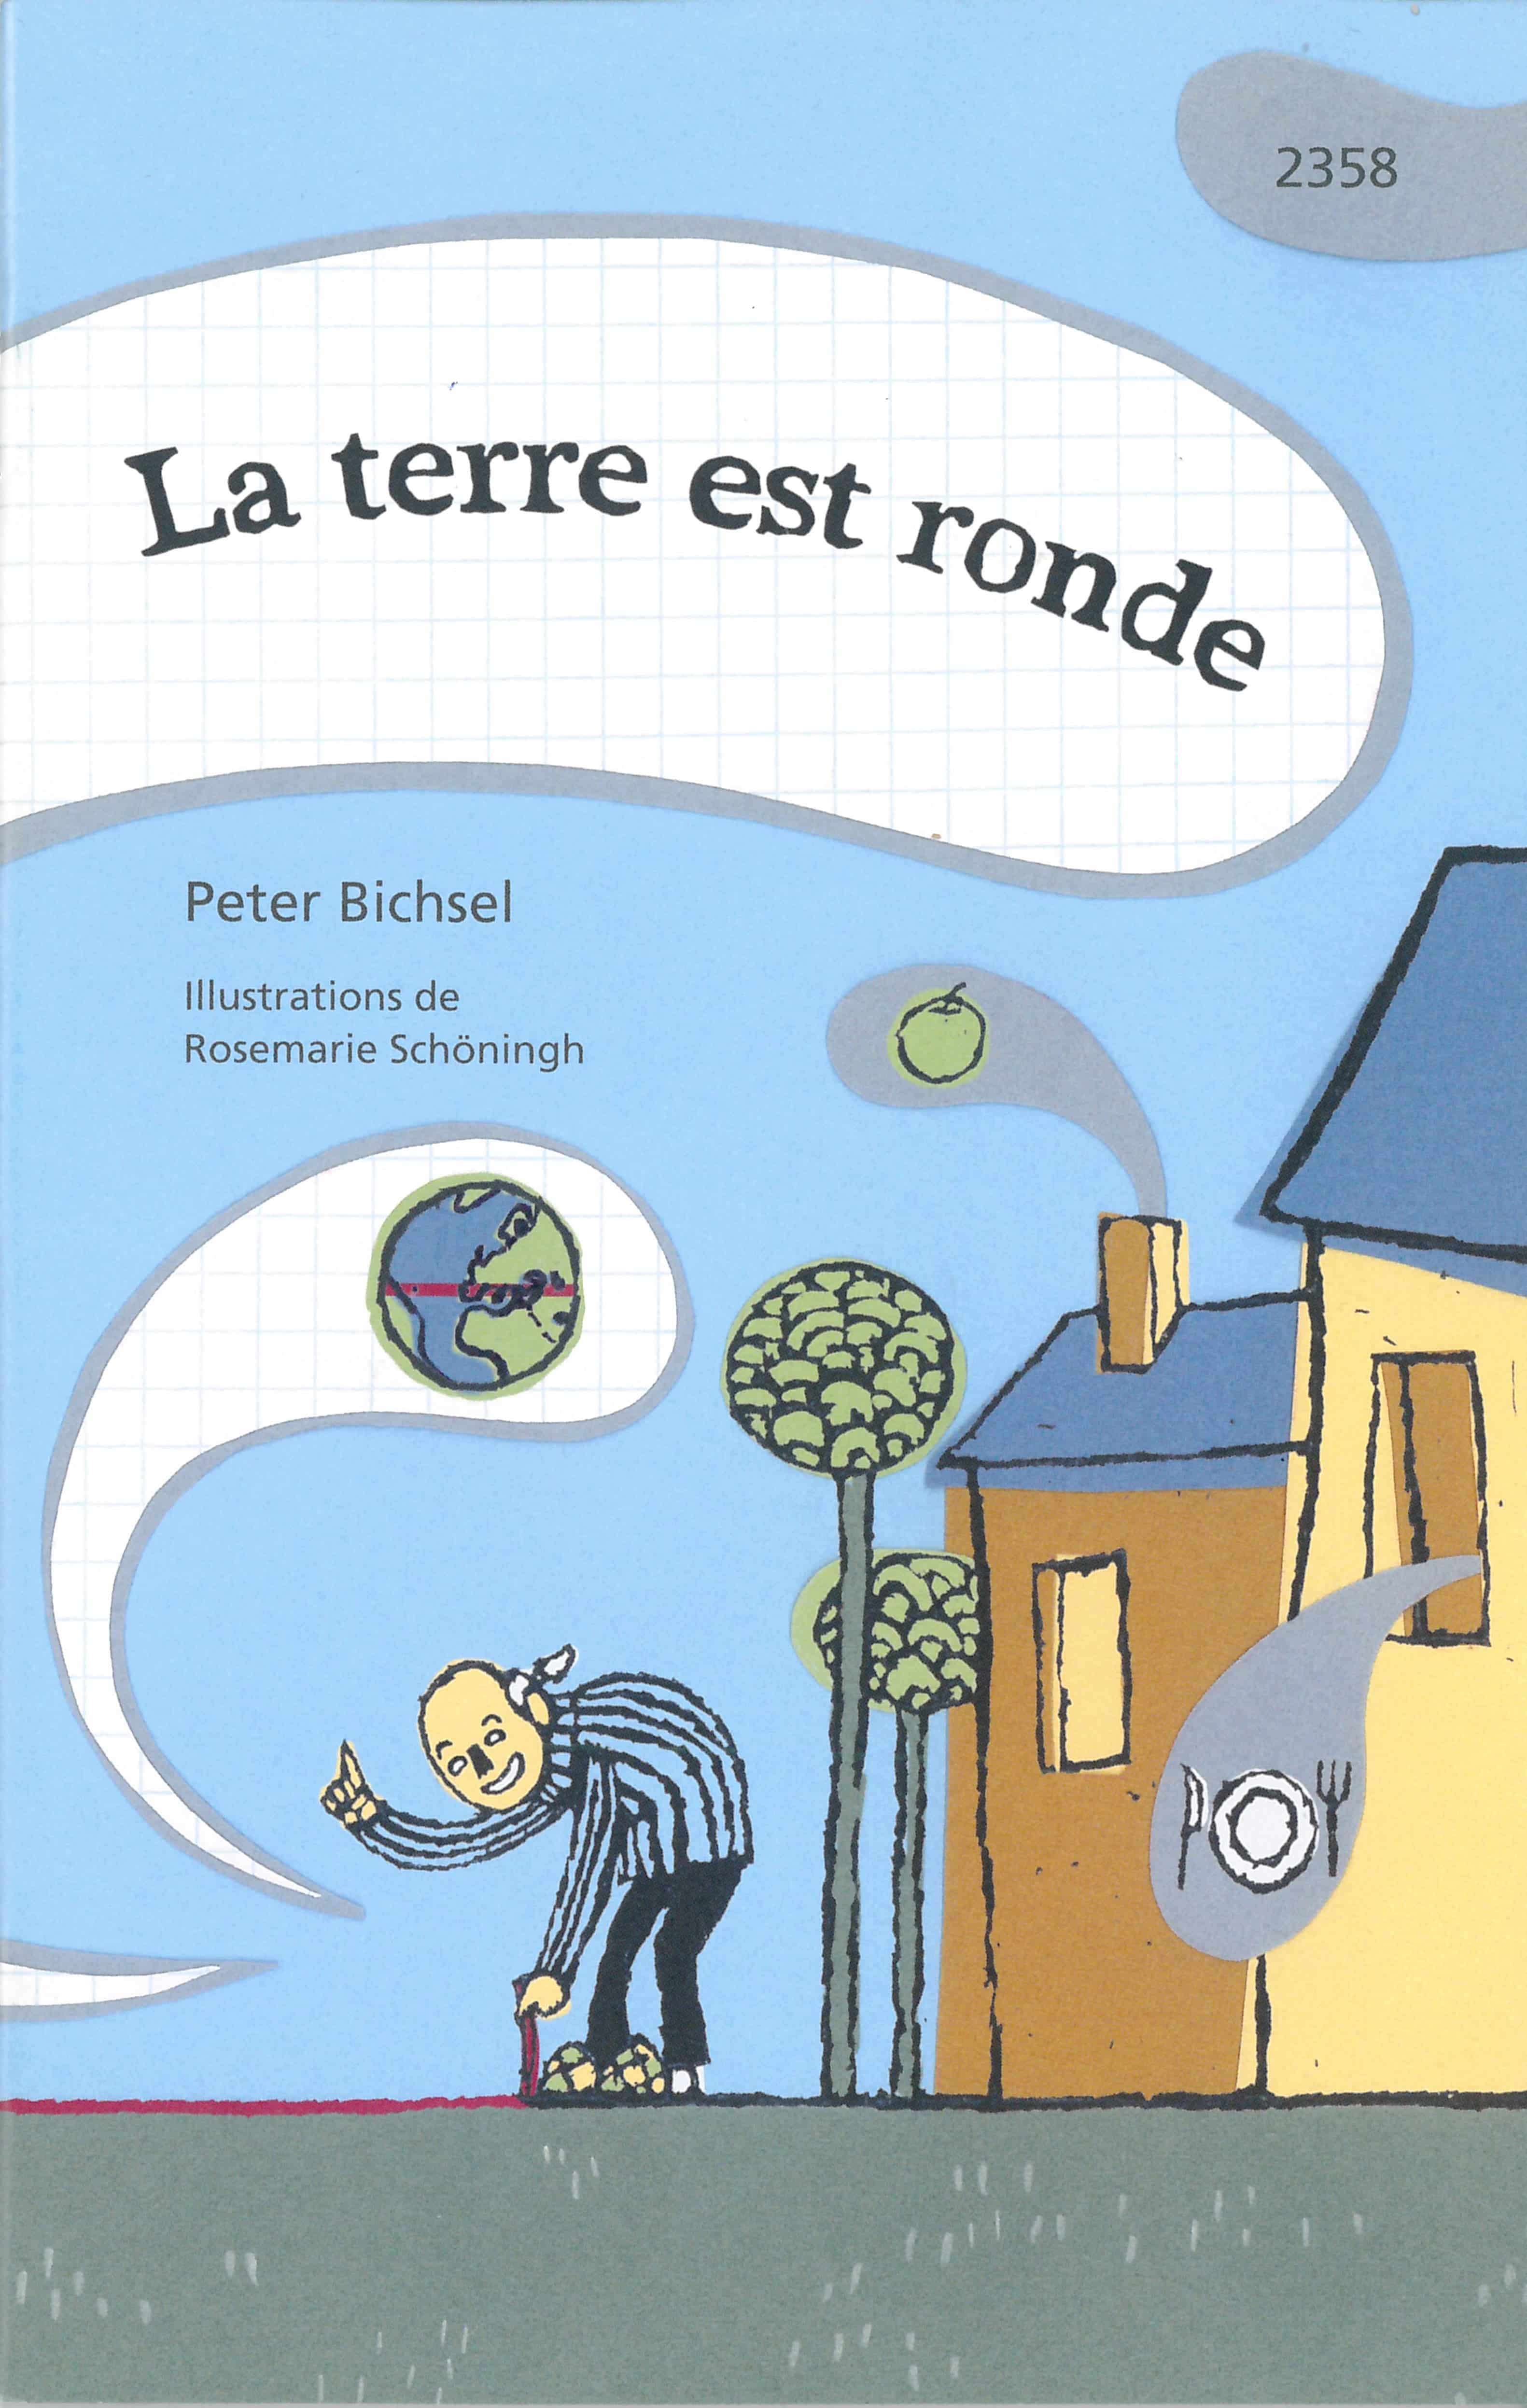 La terre est ronde, un livre pour enfants de Peter Bichsel, illustré par Rosemarie Schoeningh, éditions de l'OSL, philosophie